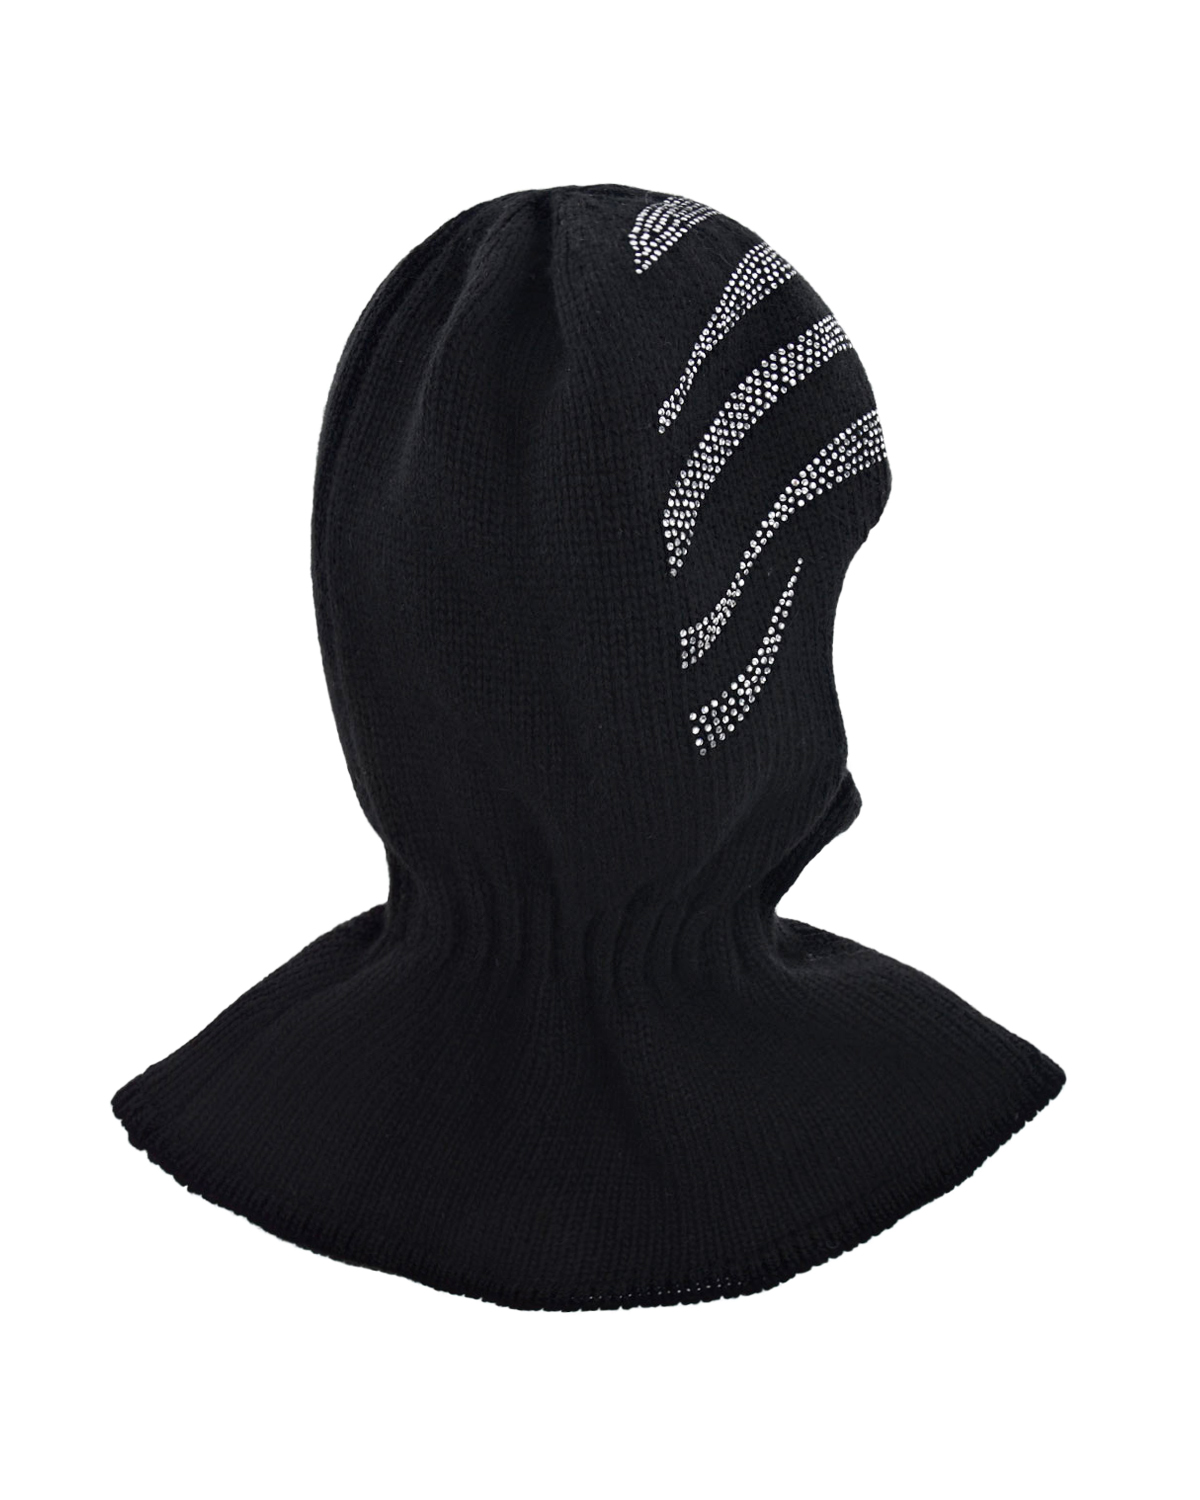 Черная шапка-шлем со стразами Chobi детская, размер 52/54, цвет черный